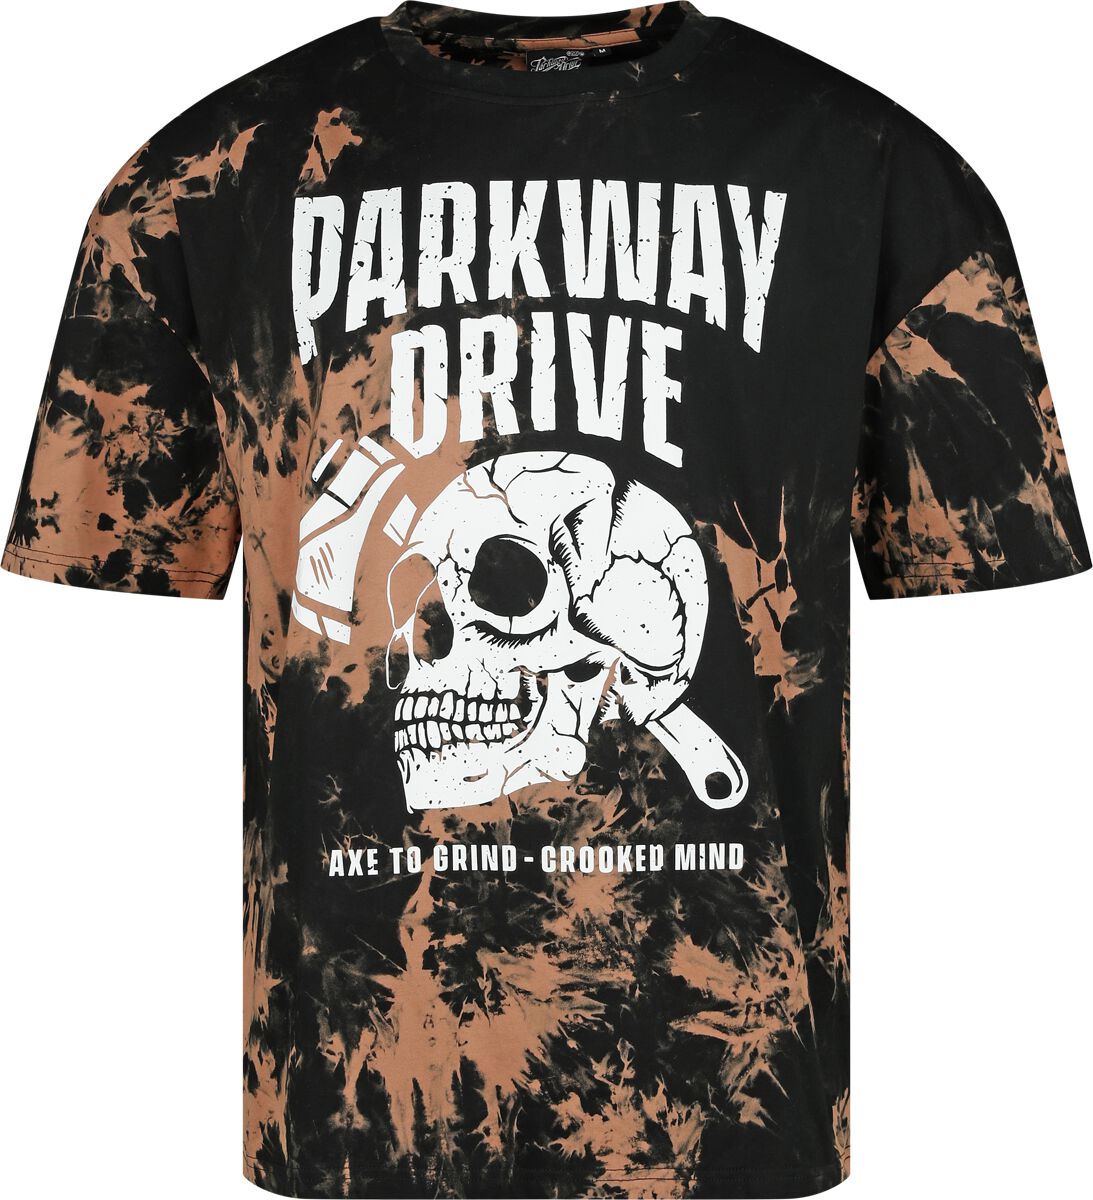 Parkway Drive T-Shirt - S bis 3XL - für Männer - Größe L - schwarz/braun  - EMP exklusives Merchandise!